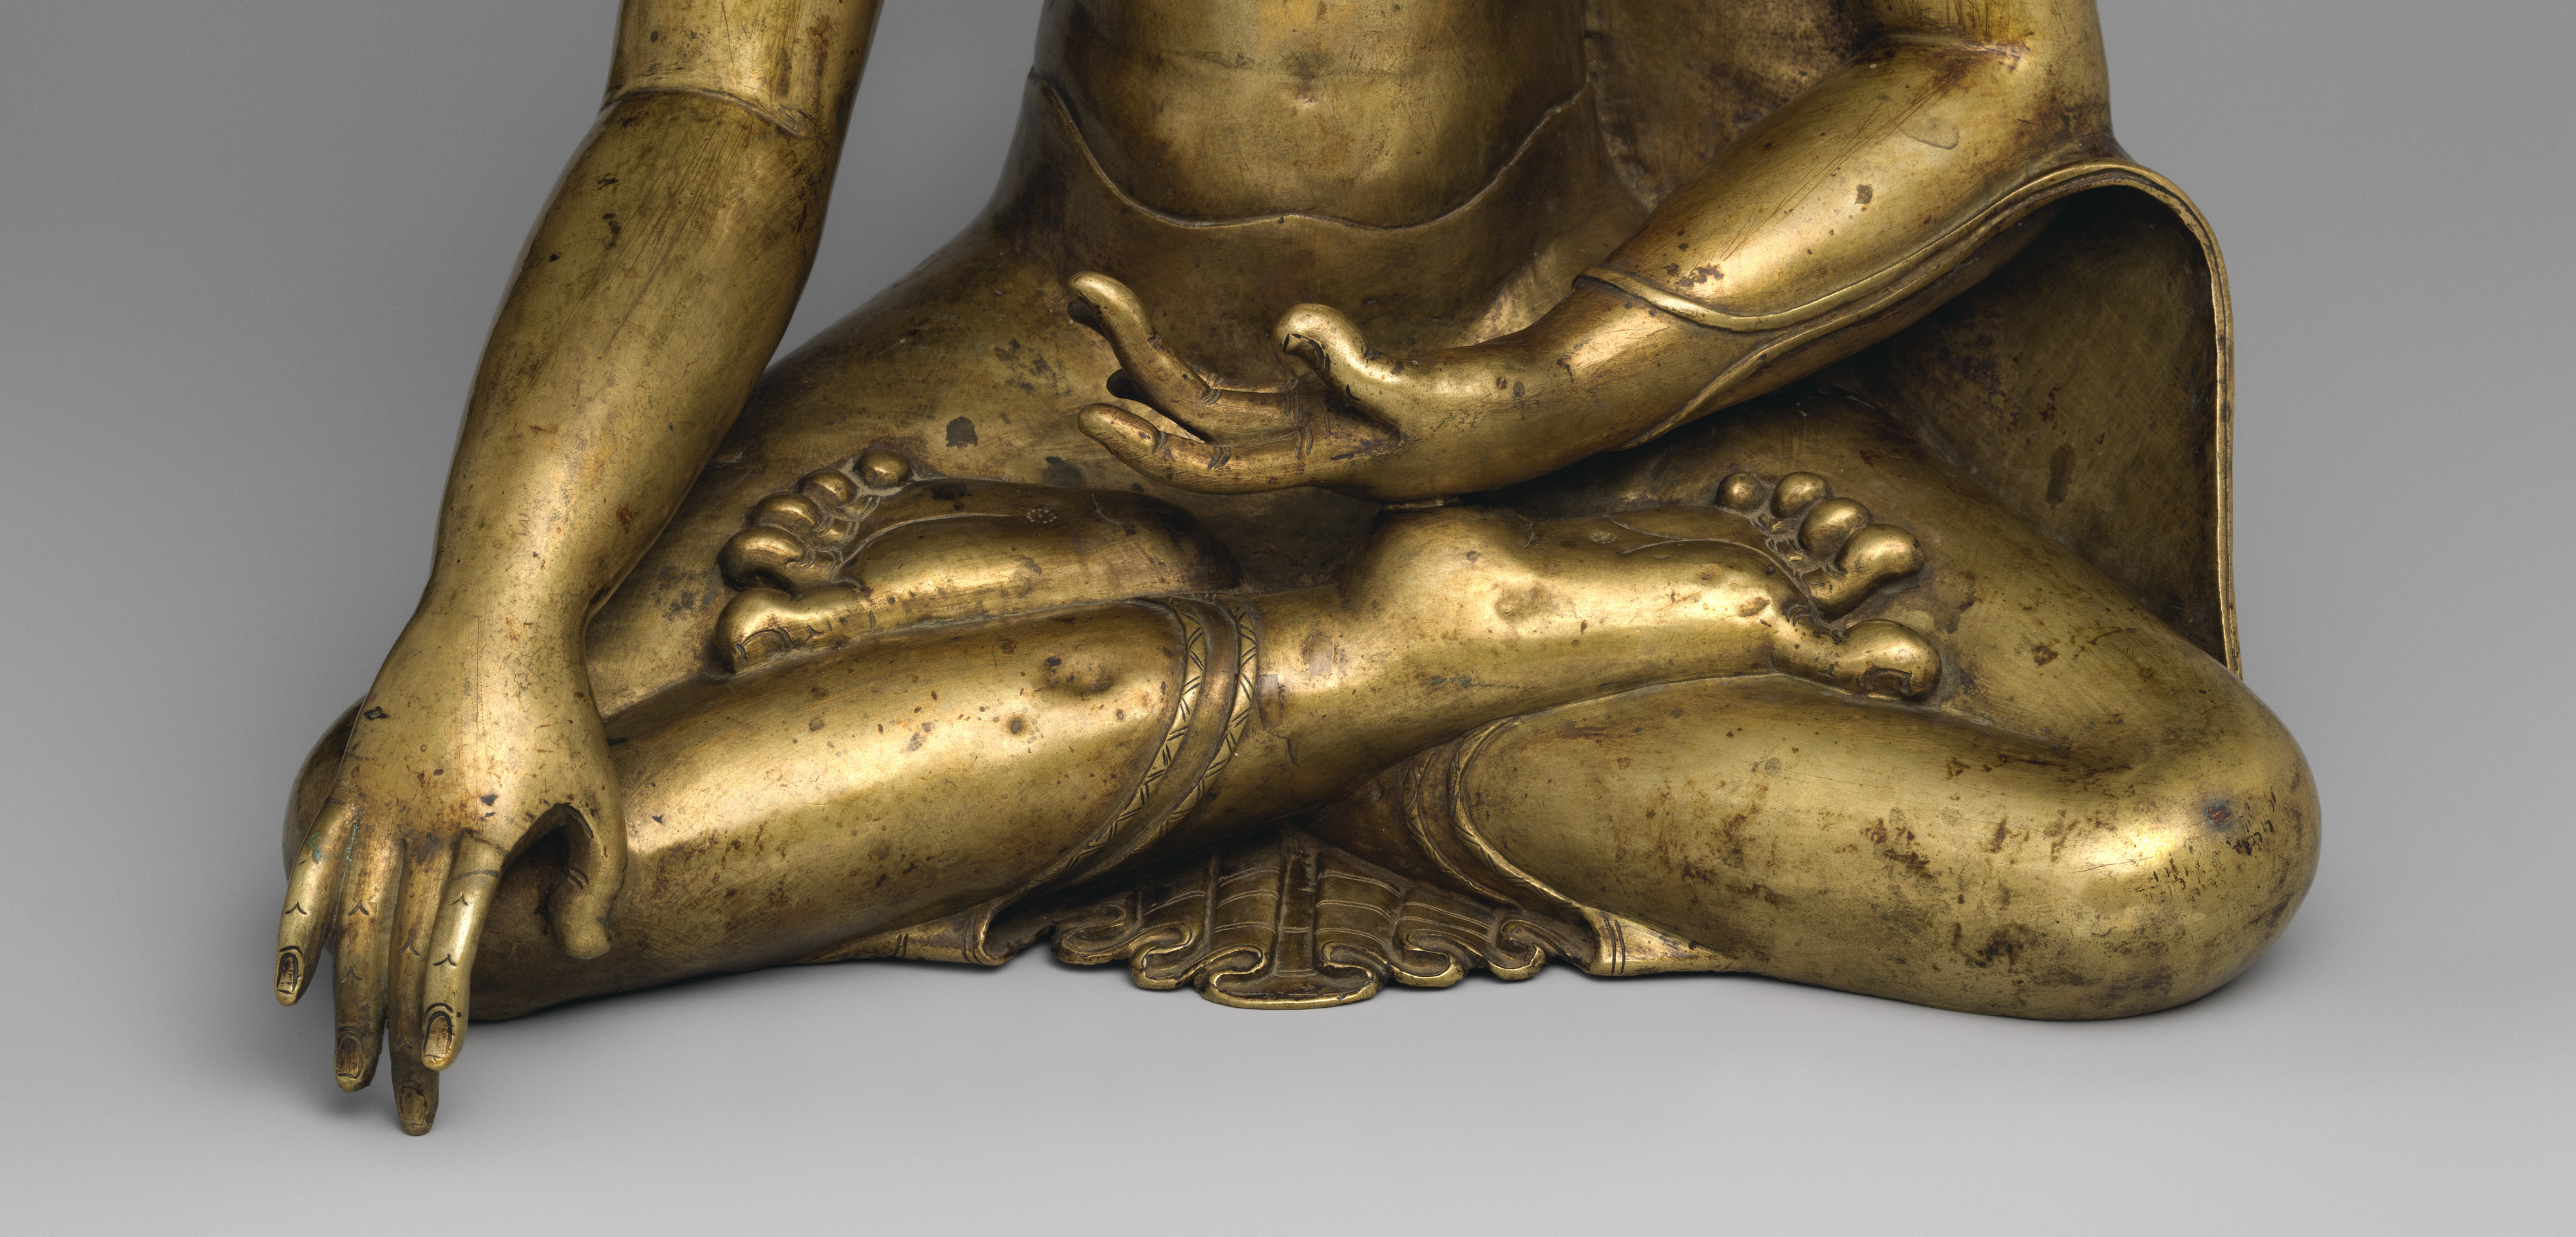 Details about   Tibet Tibetan Buddhism Silver Seat Sleep Shakyamuni Sakyamuni Buddha Statu 